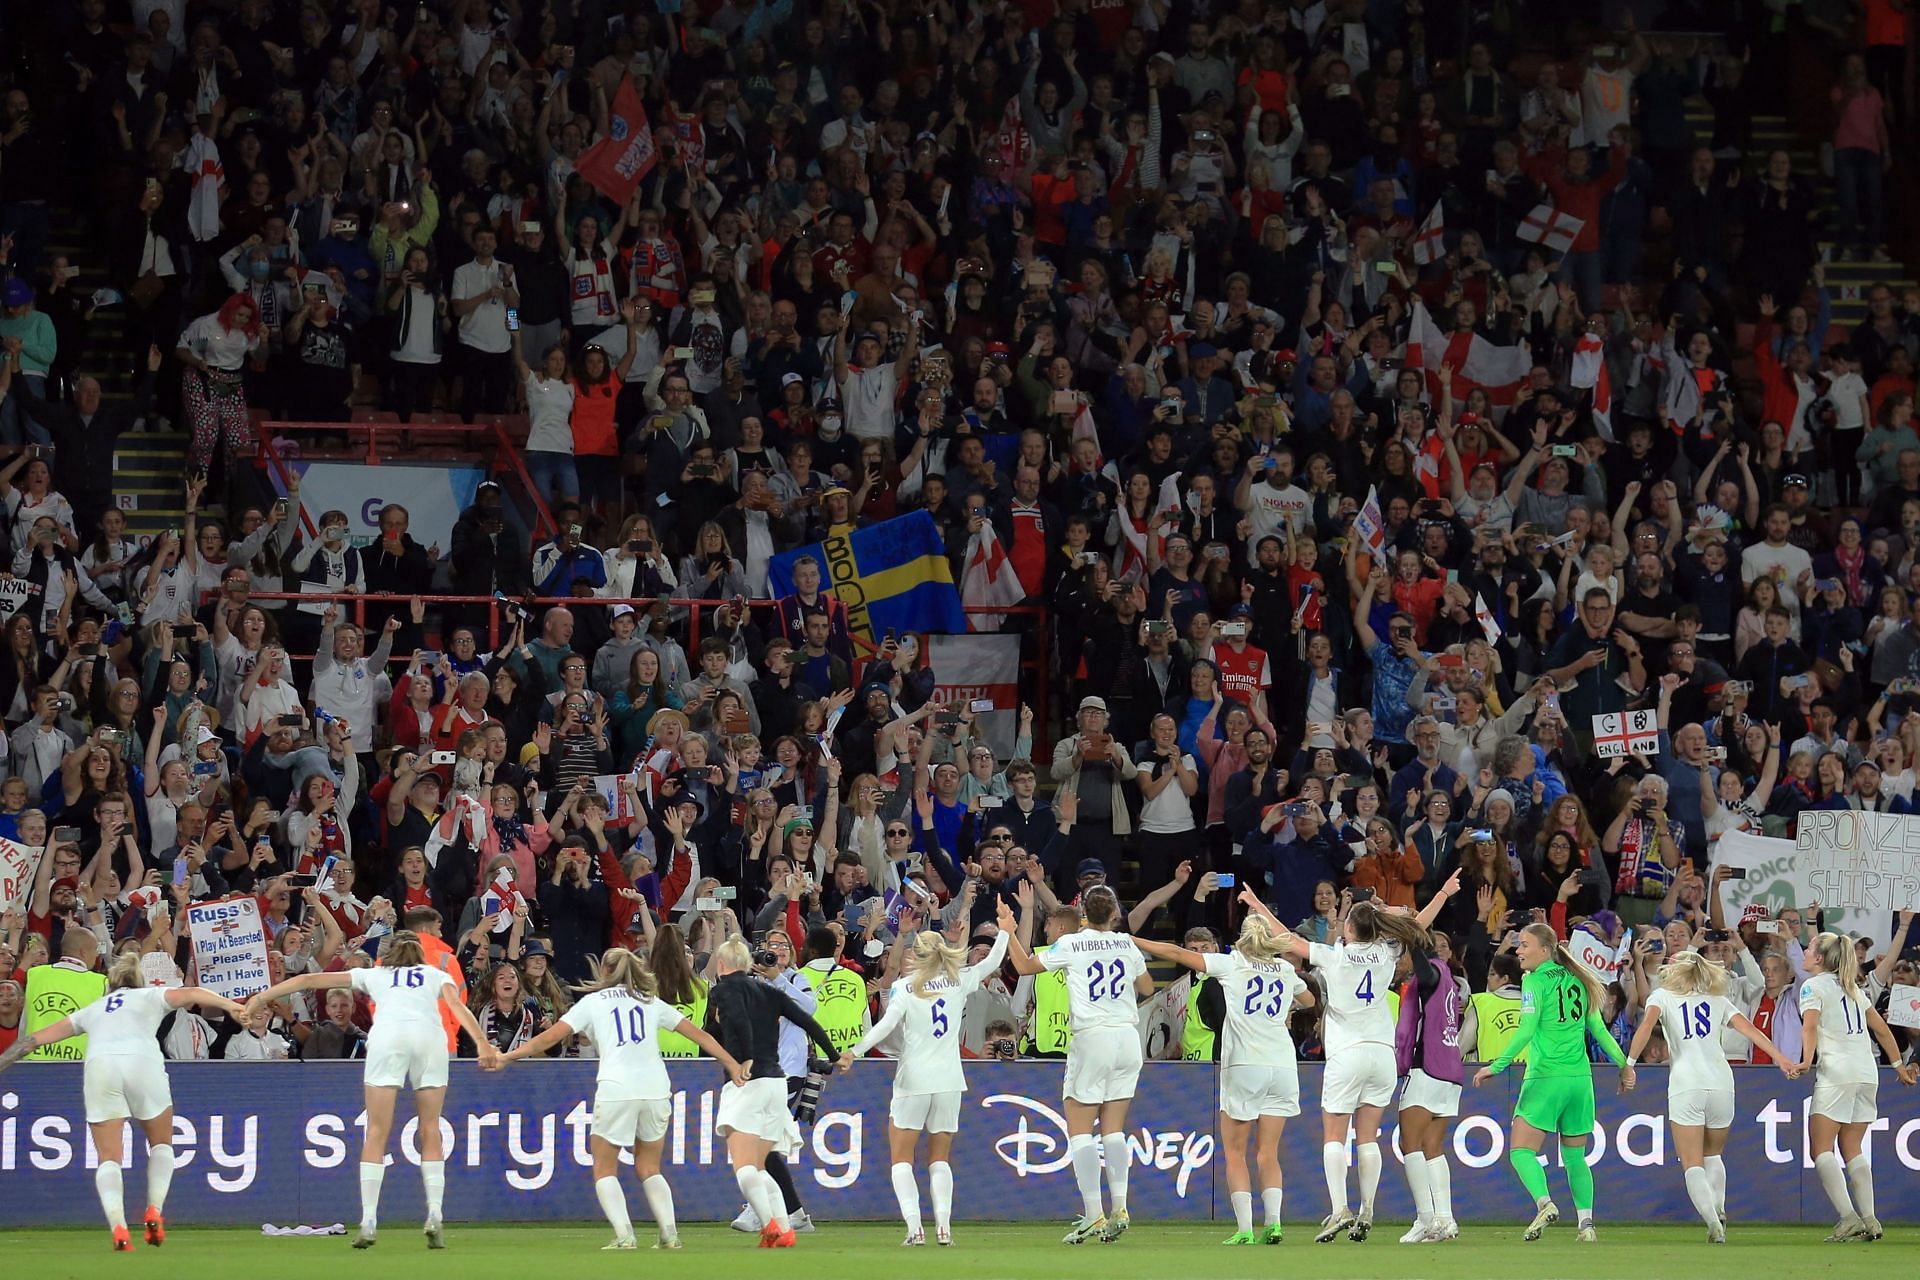 जीत के बाद दर्शकों का अभिवादन करतीं इंग्लैंड की महिला फुटबॉल टीम।